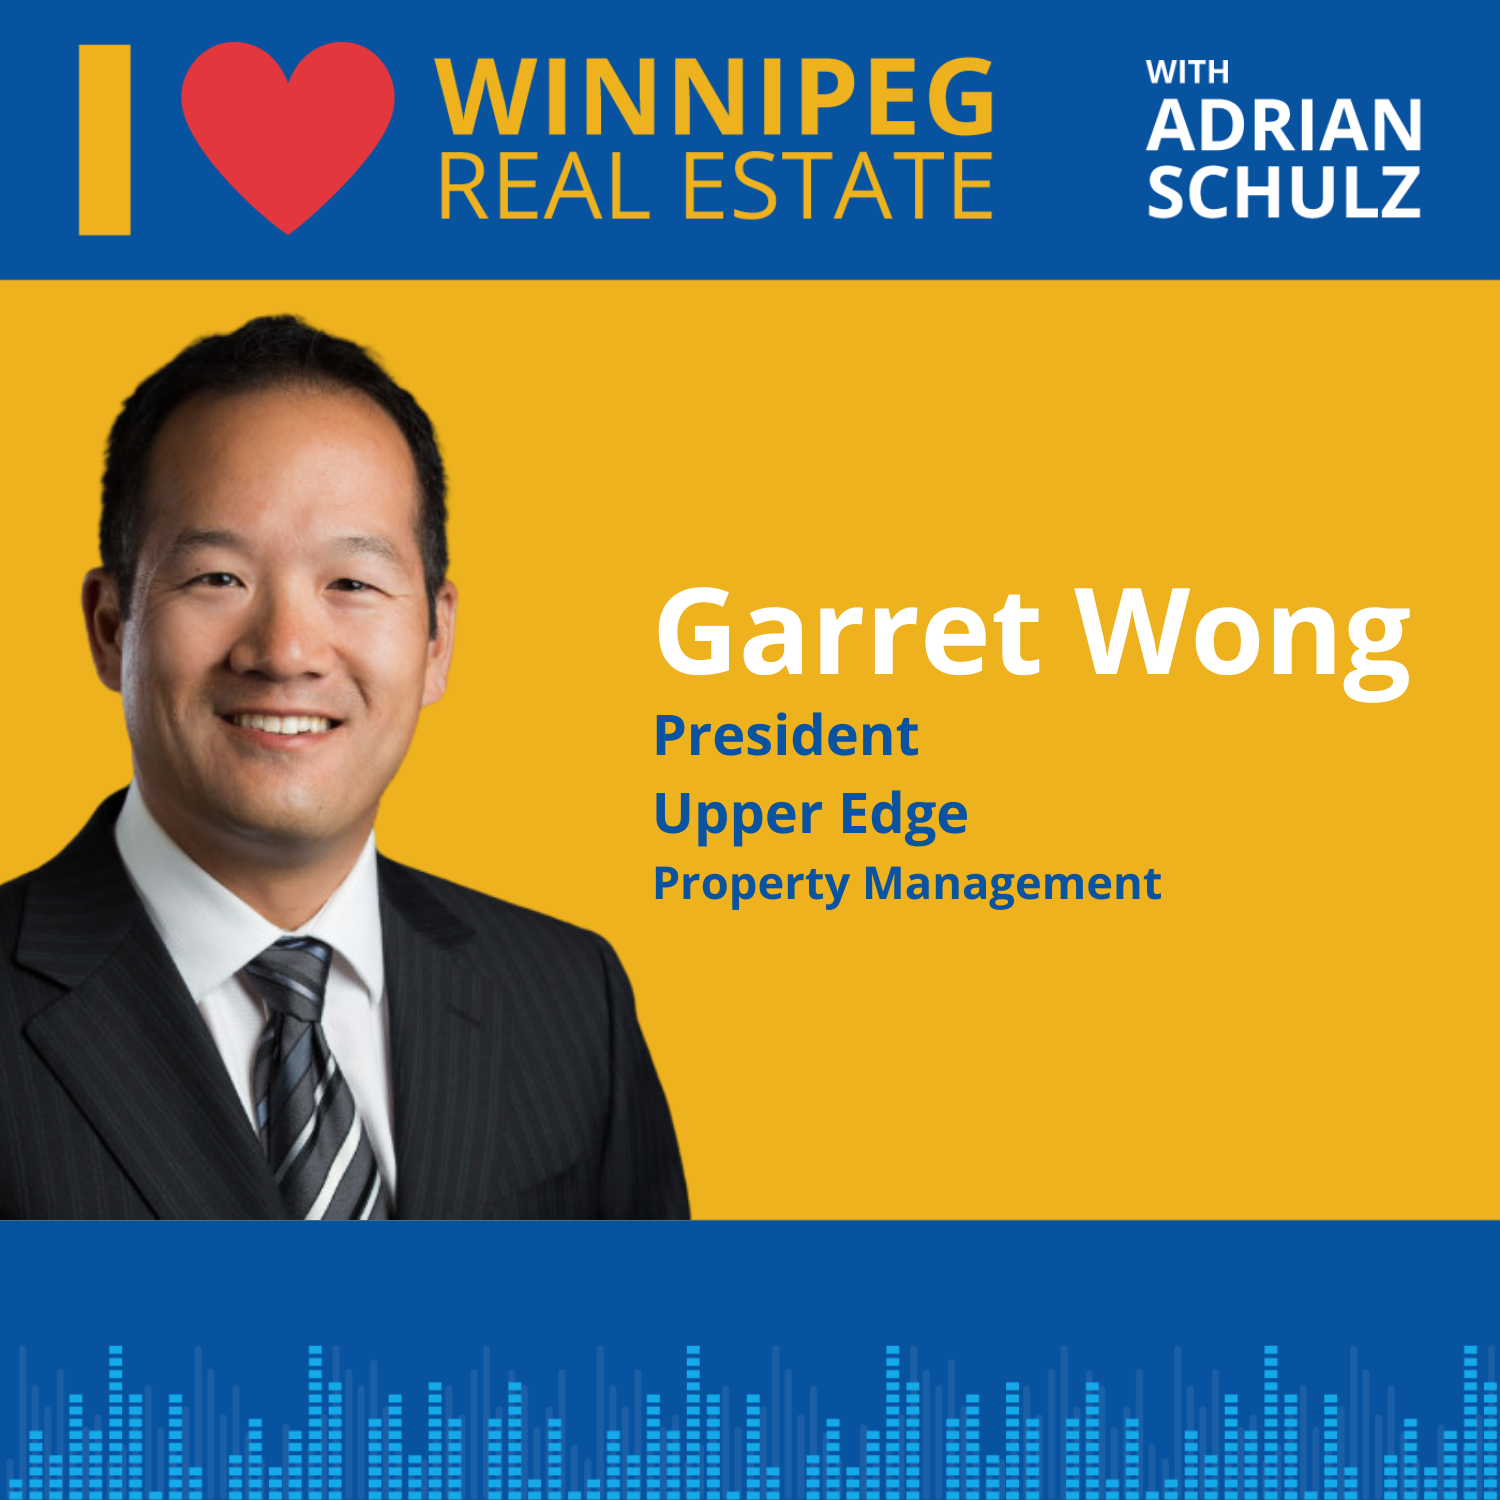 Garret Wong on rental property management Image